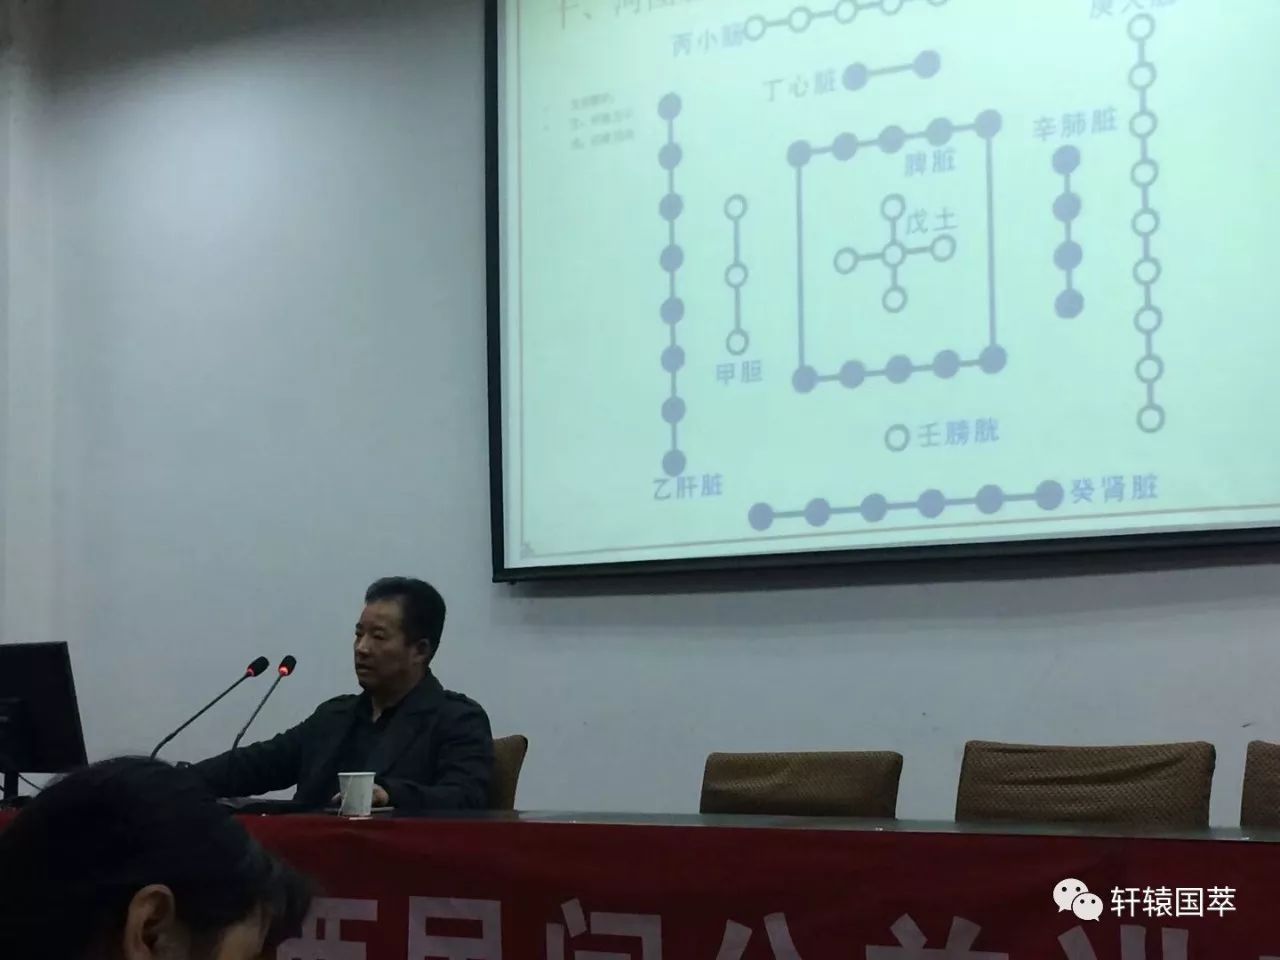 2017中华国学陕西民间公益讲座第32期天干地支的应用